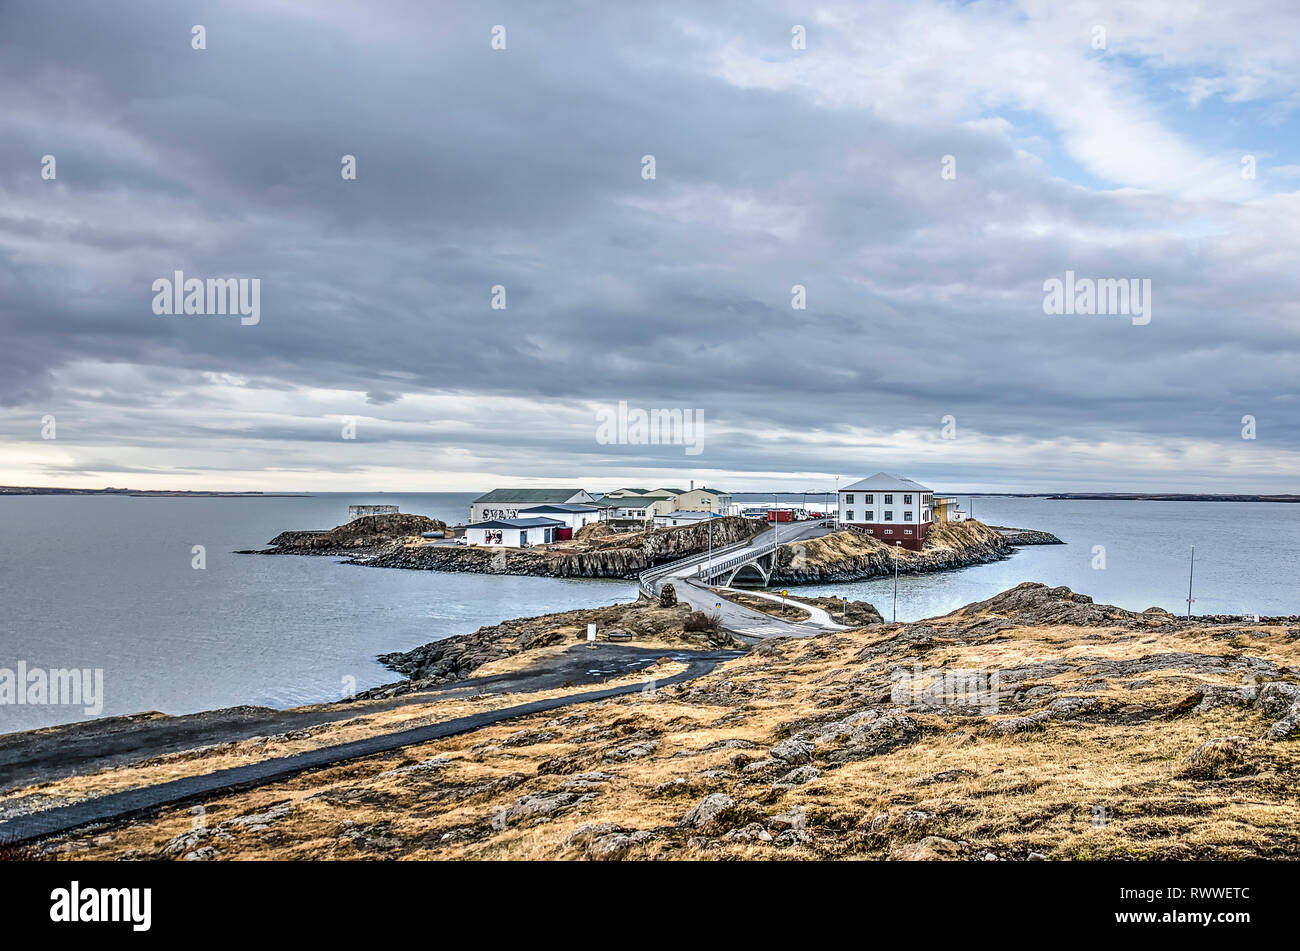 Borgarnes, Islandia, 28 de febrero de 2019: vista desde una colina baja hacia Brakarey isla, conectada por un puente a la punta de la península de la ciudad. Foto de stock